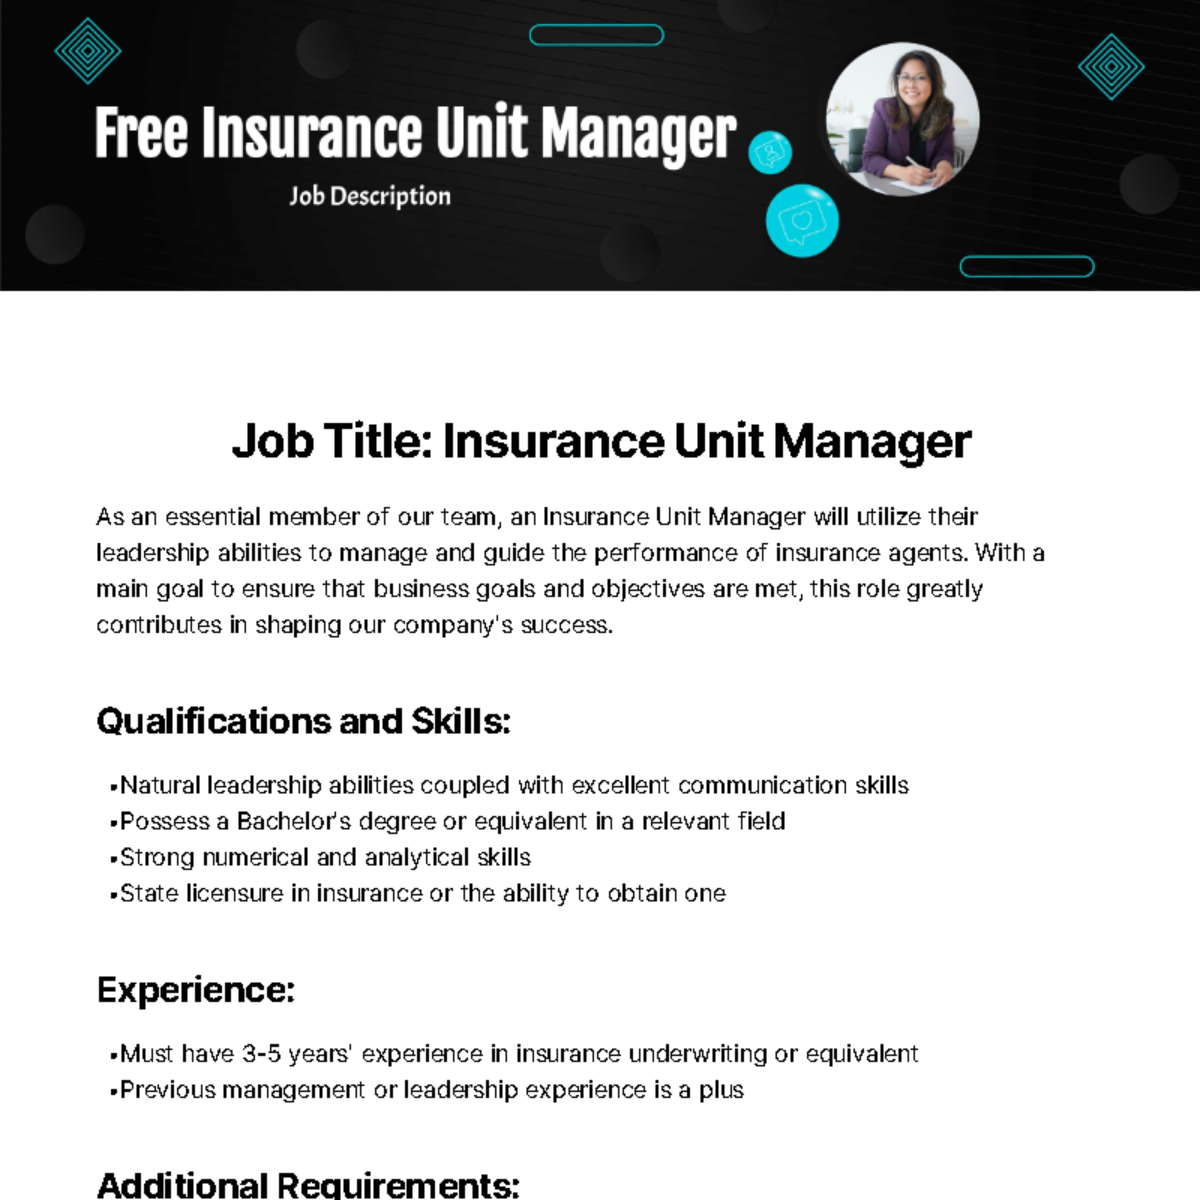 Free Insurance Unit Manager Job Description Template